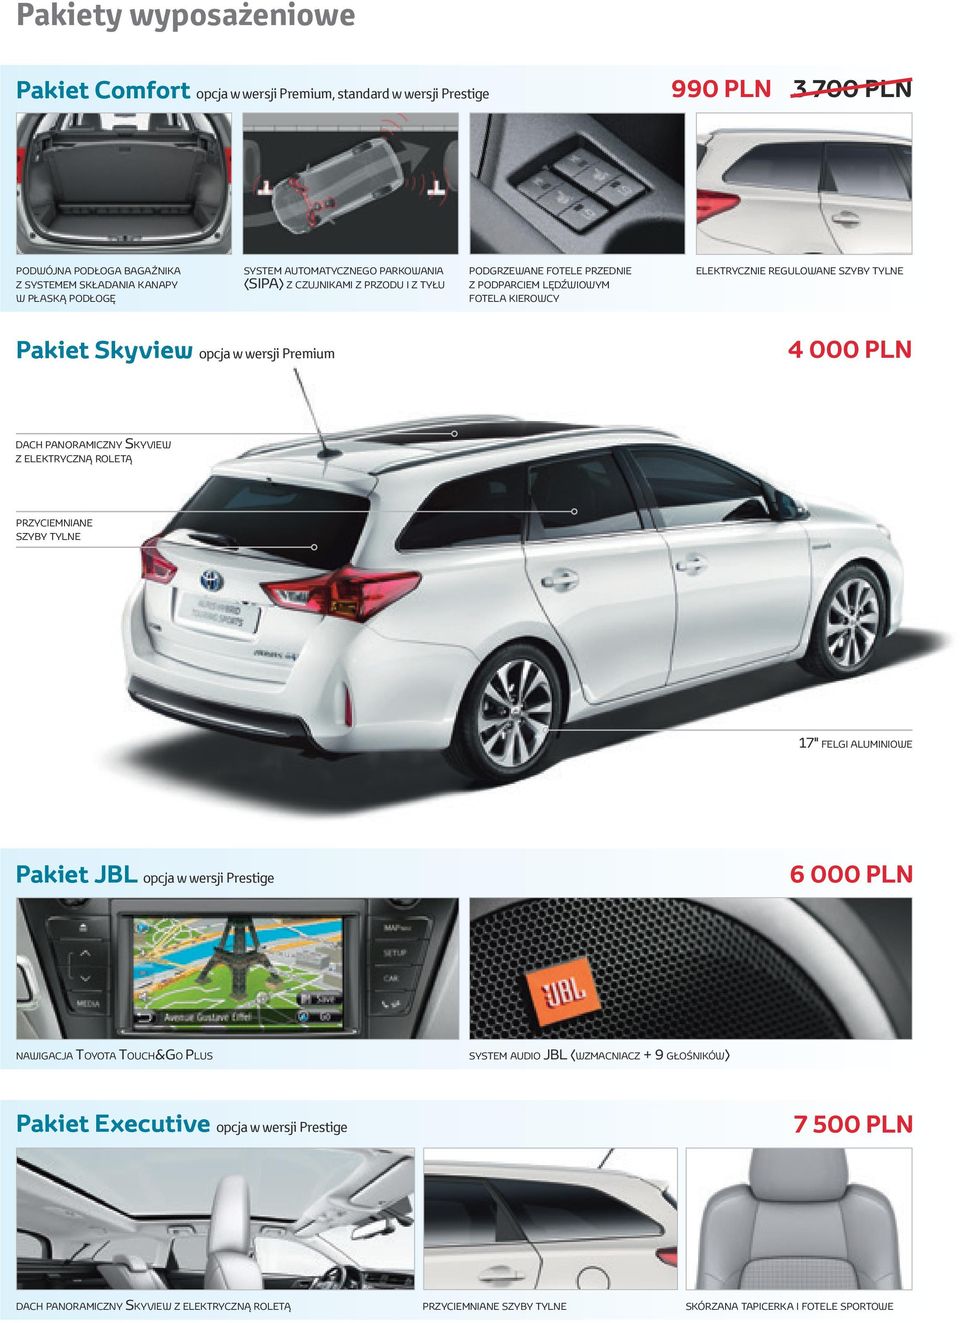 wersji Premium 4 000 PLN dach panoramiczny Skyview z elektryczną roletą przyciemniane szyby tylne 17" felgi aluminiowe Pakiet JBL opcja w wersji Prestige 6 000 PLN nawigacja Toyota Touch&Go